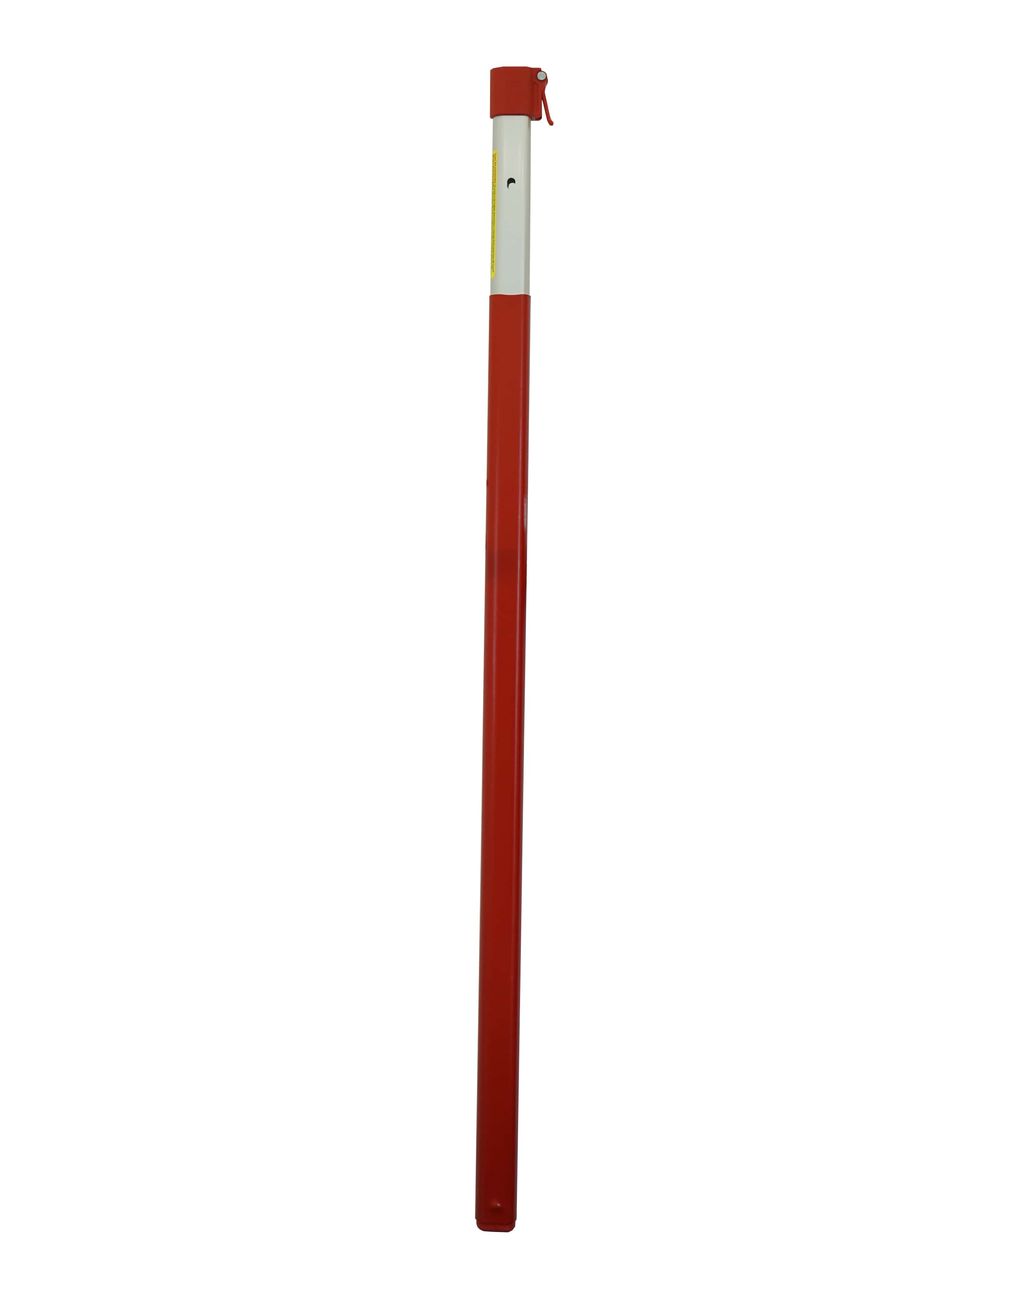 A-Rohr für EXP-5.5; L: 1,95 m mit Gummimantel